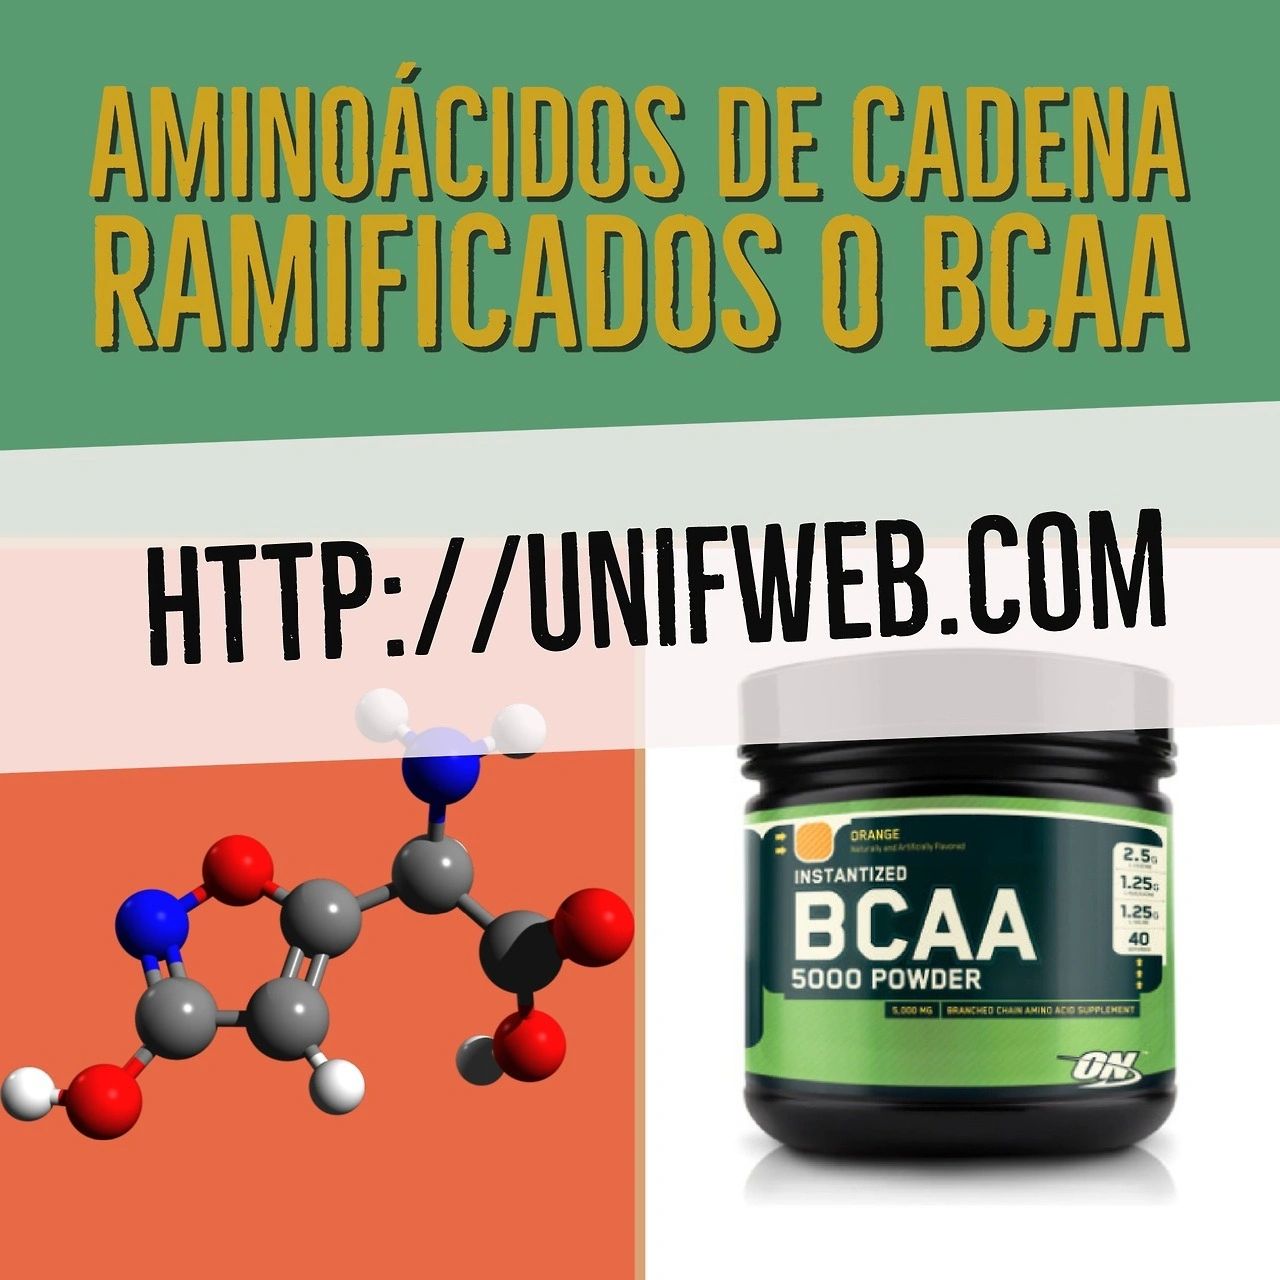 Aminoácidos de cadena ramificada o BCAA